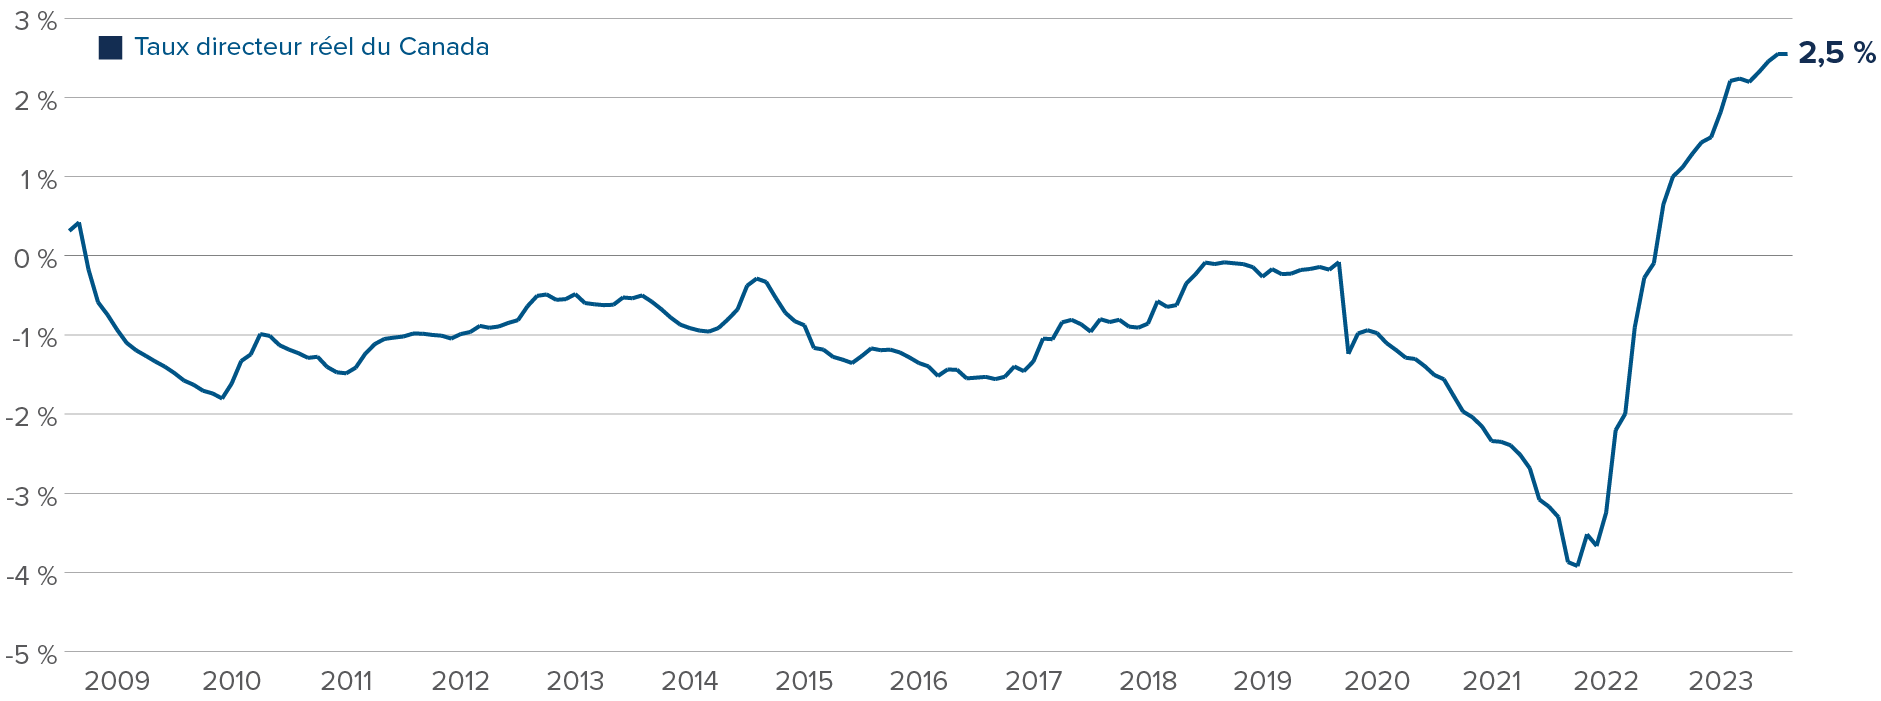 Graphique : Les taux d’intérêt réel du Canada s’élève à 2,5 %, alors qu’il était de -4 % pendant la période COVID. Le taux d’intérêt réel n’a pas été positif depuis 2009.